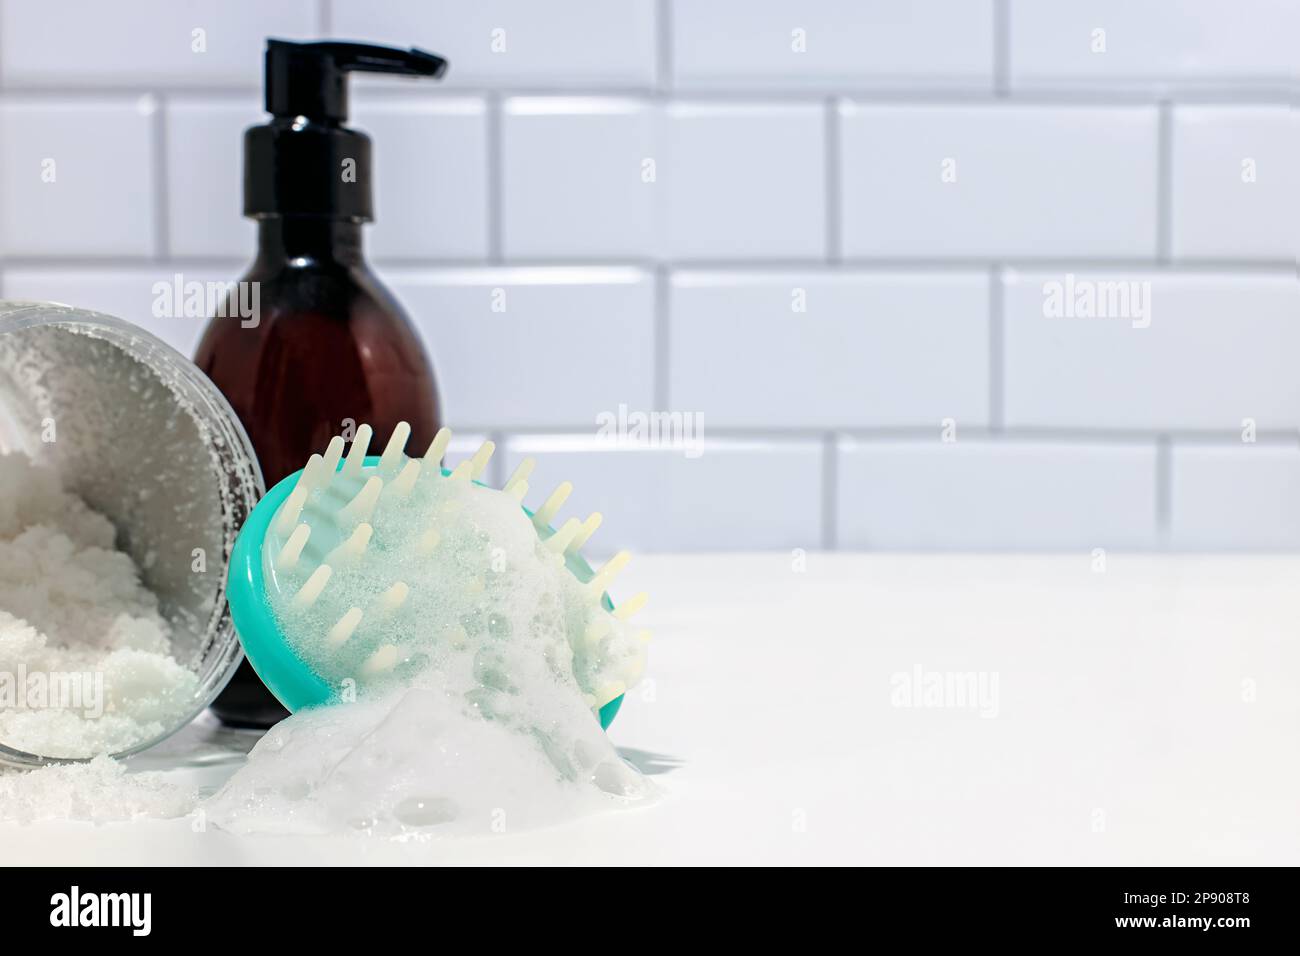 Kit de nettoyage des cheveux, brosse de nettoyage du cuir chevelu avec mousse et une bouteille de shampooing dans la salle de bains Banque D'Images